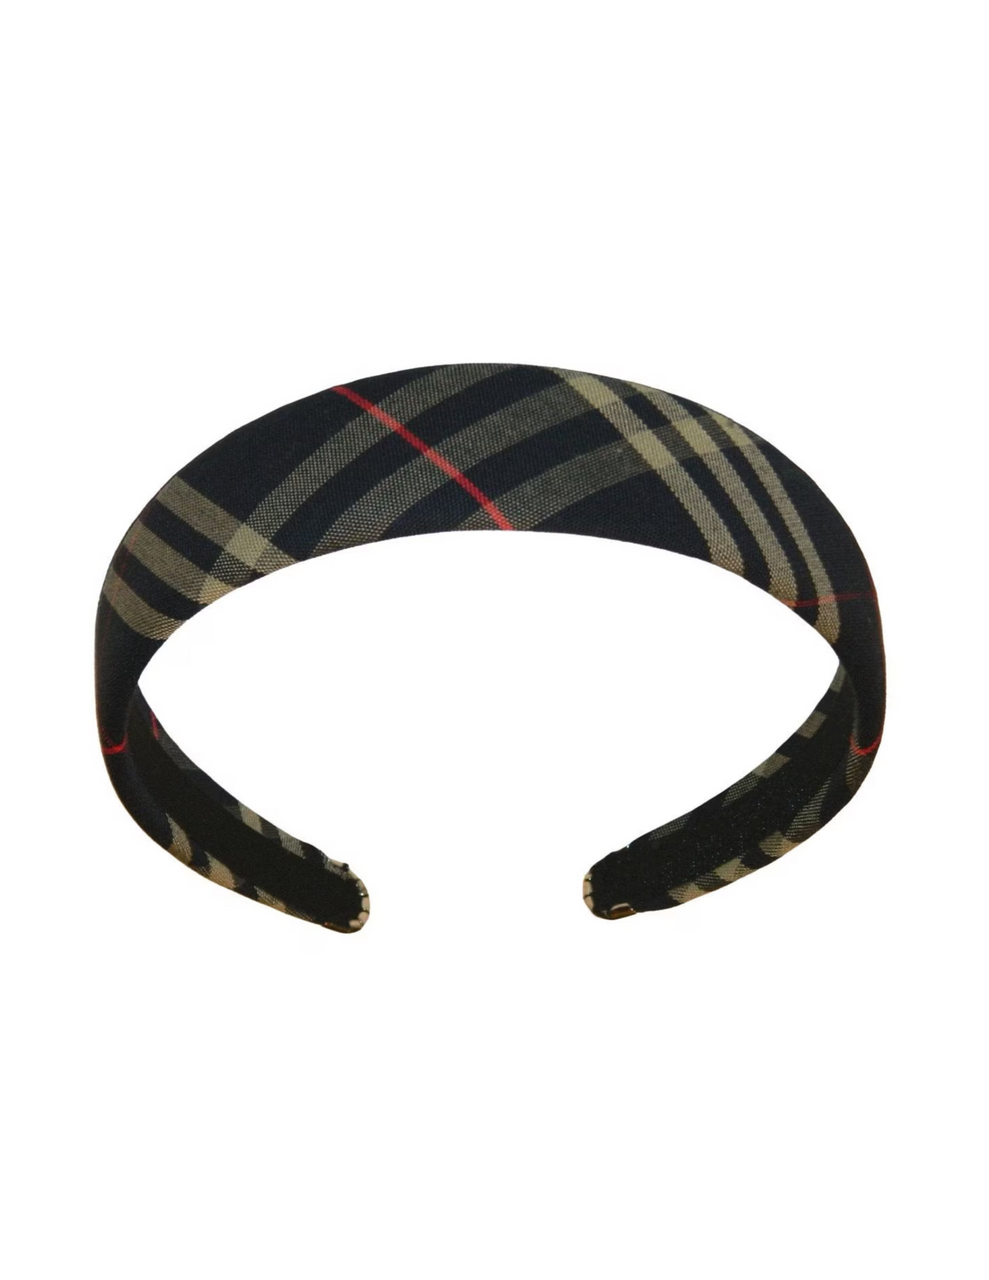 Navy & Tan Plaid 1.5" Headband